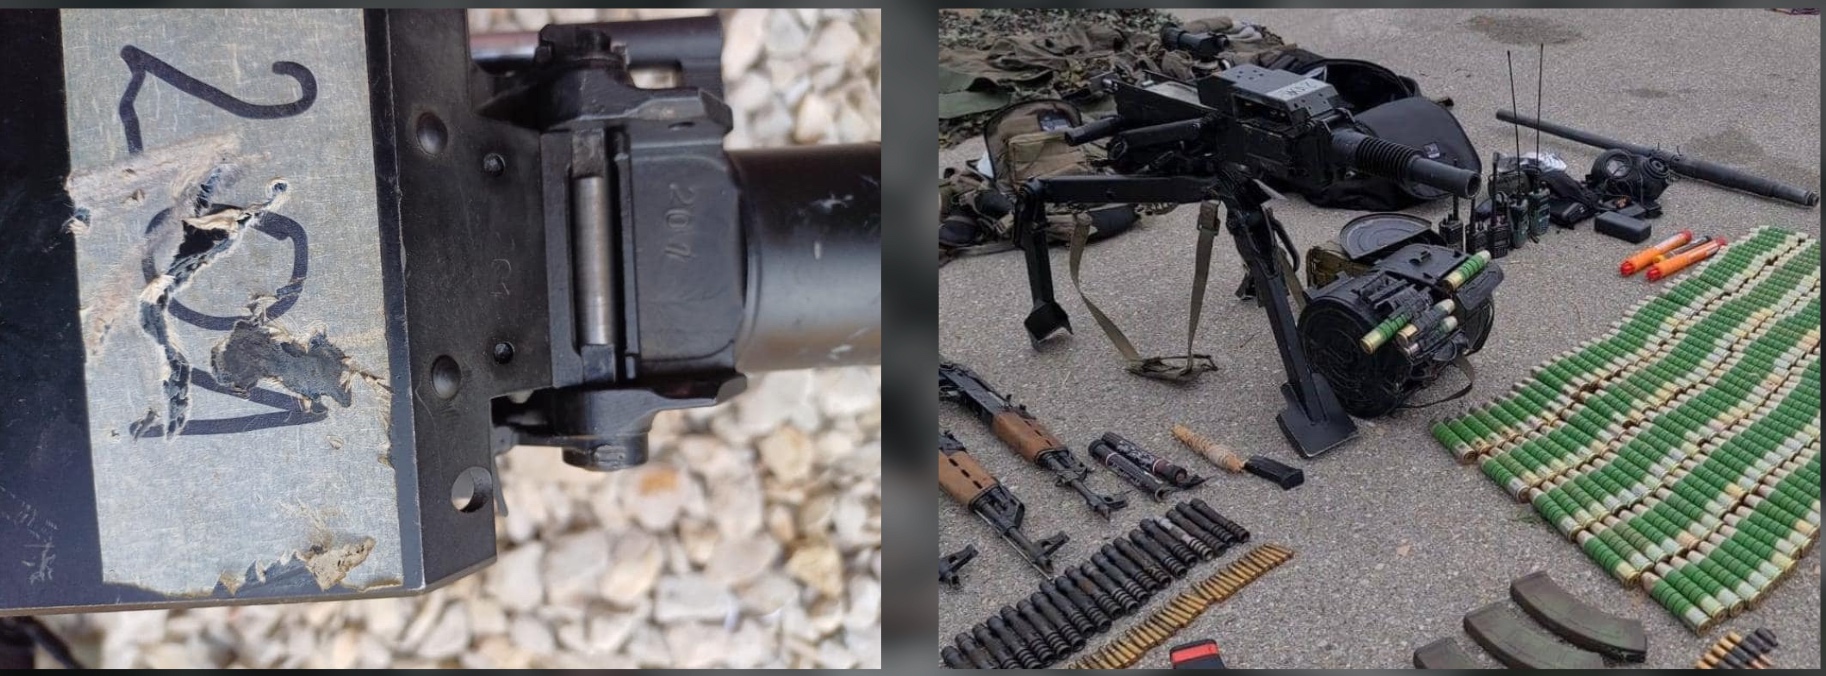 Zaplenjeni automatski bacač granata M93. Oznaka 201 na oružju poklapa se sa fabričkim brojem 201 u listi pakovanja koje je objavila kosovska policija